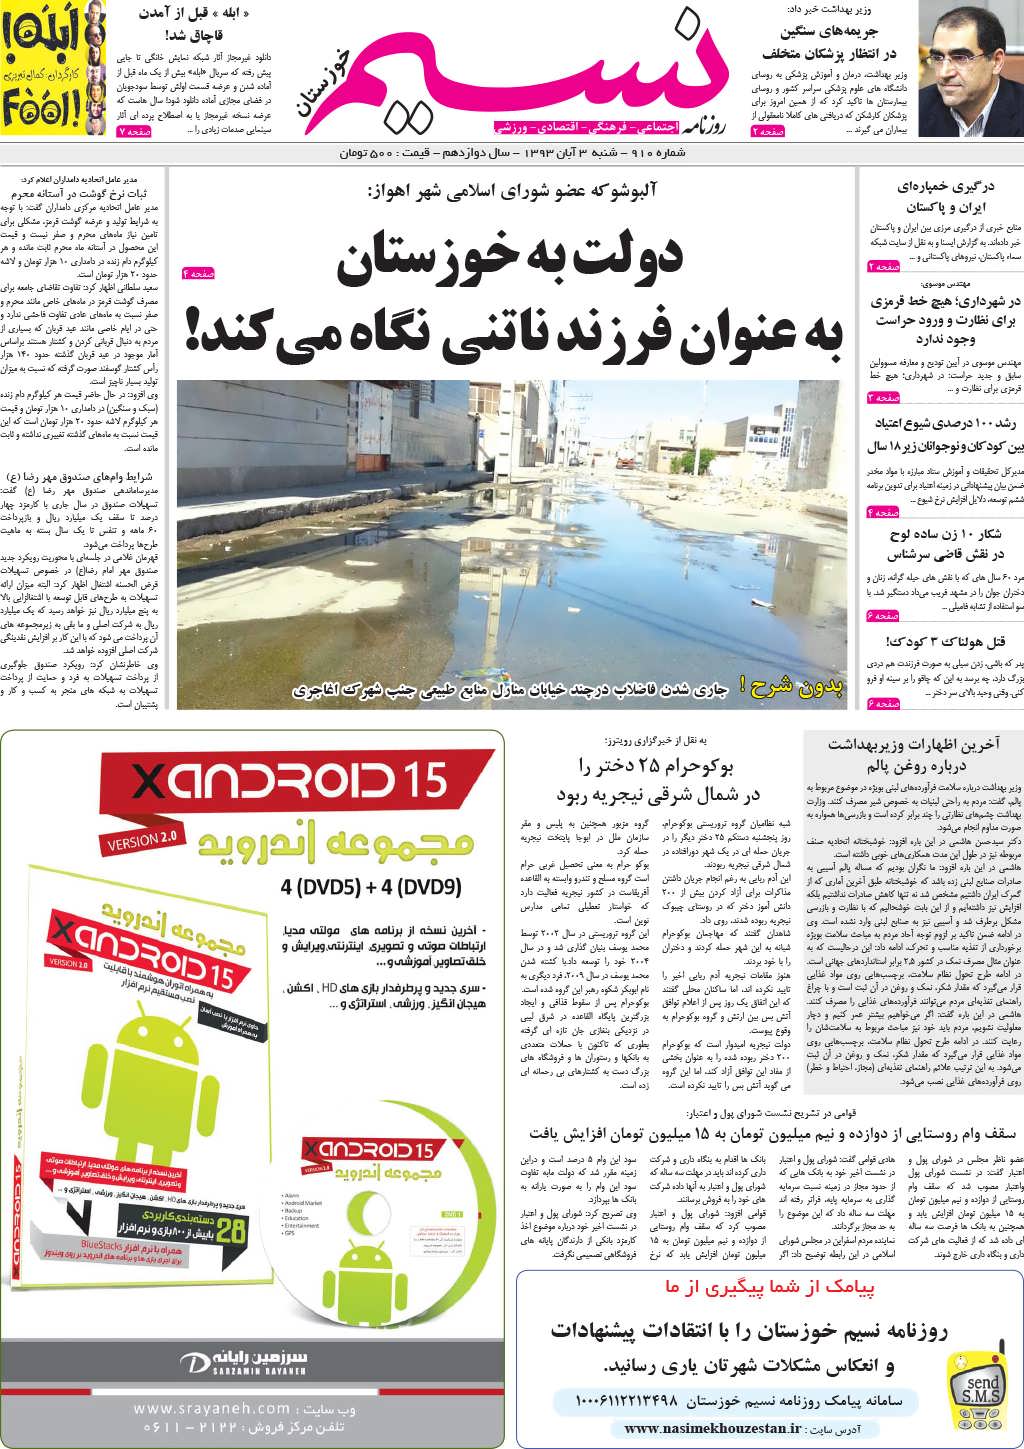 صفحه اصلی روزنامه نسیم شماره 910 